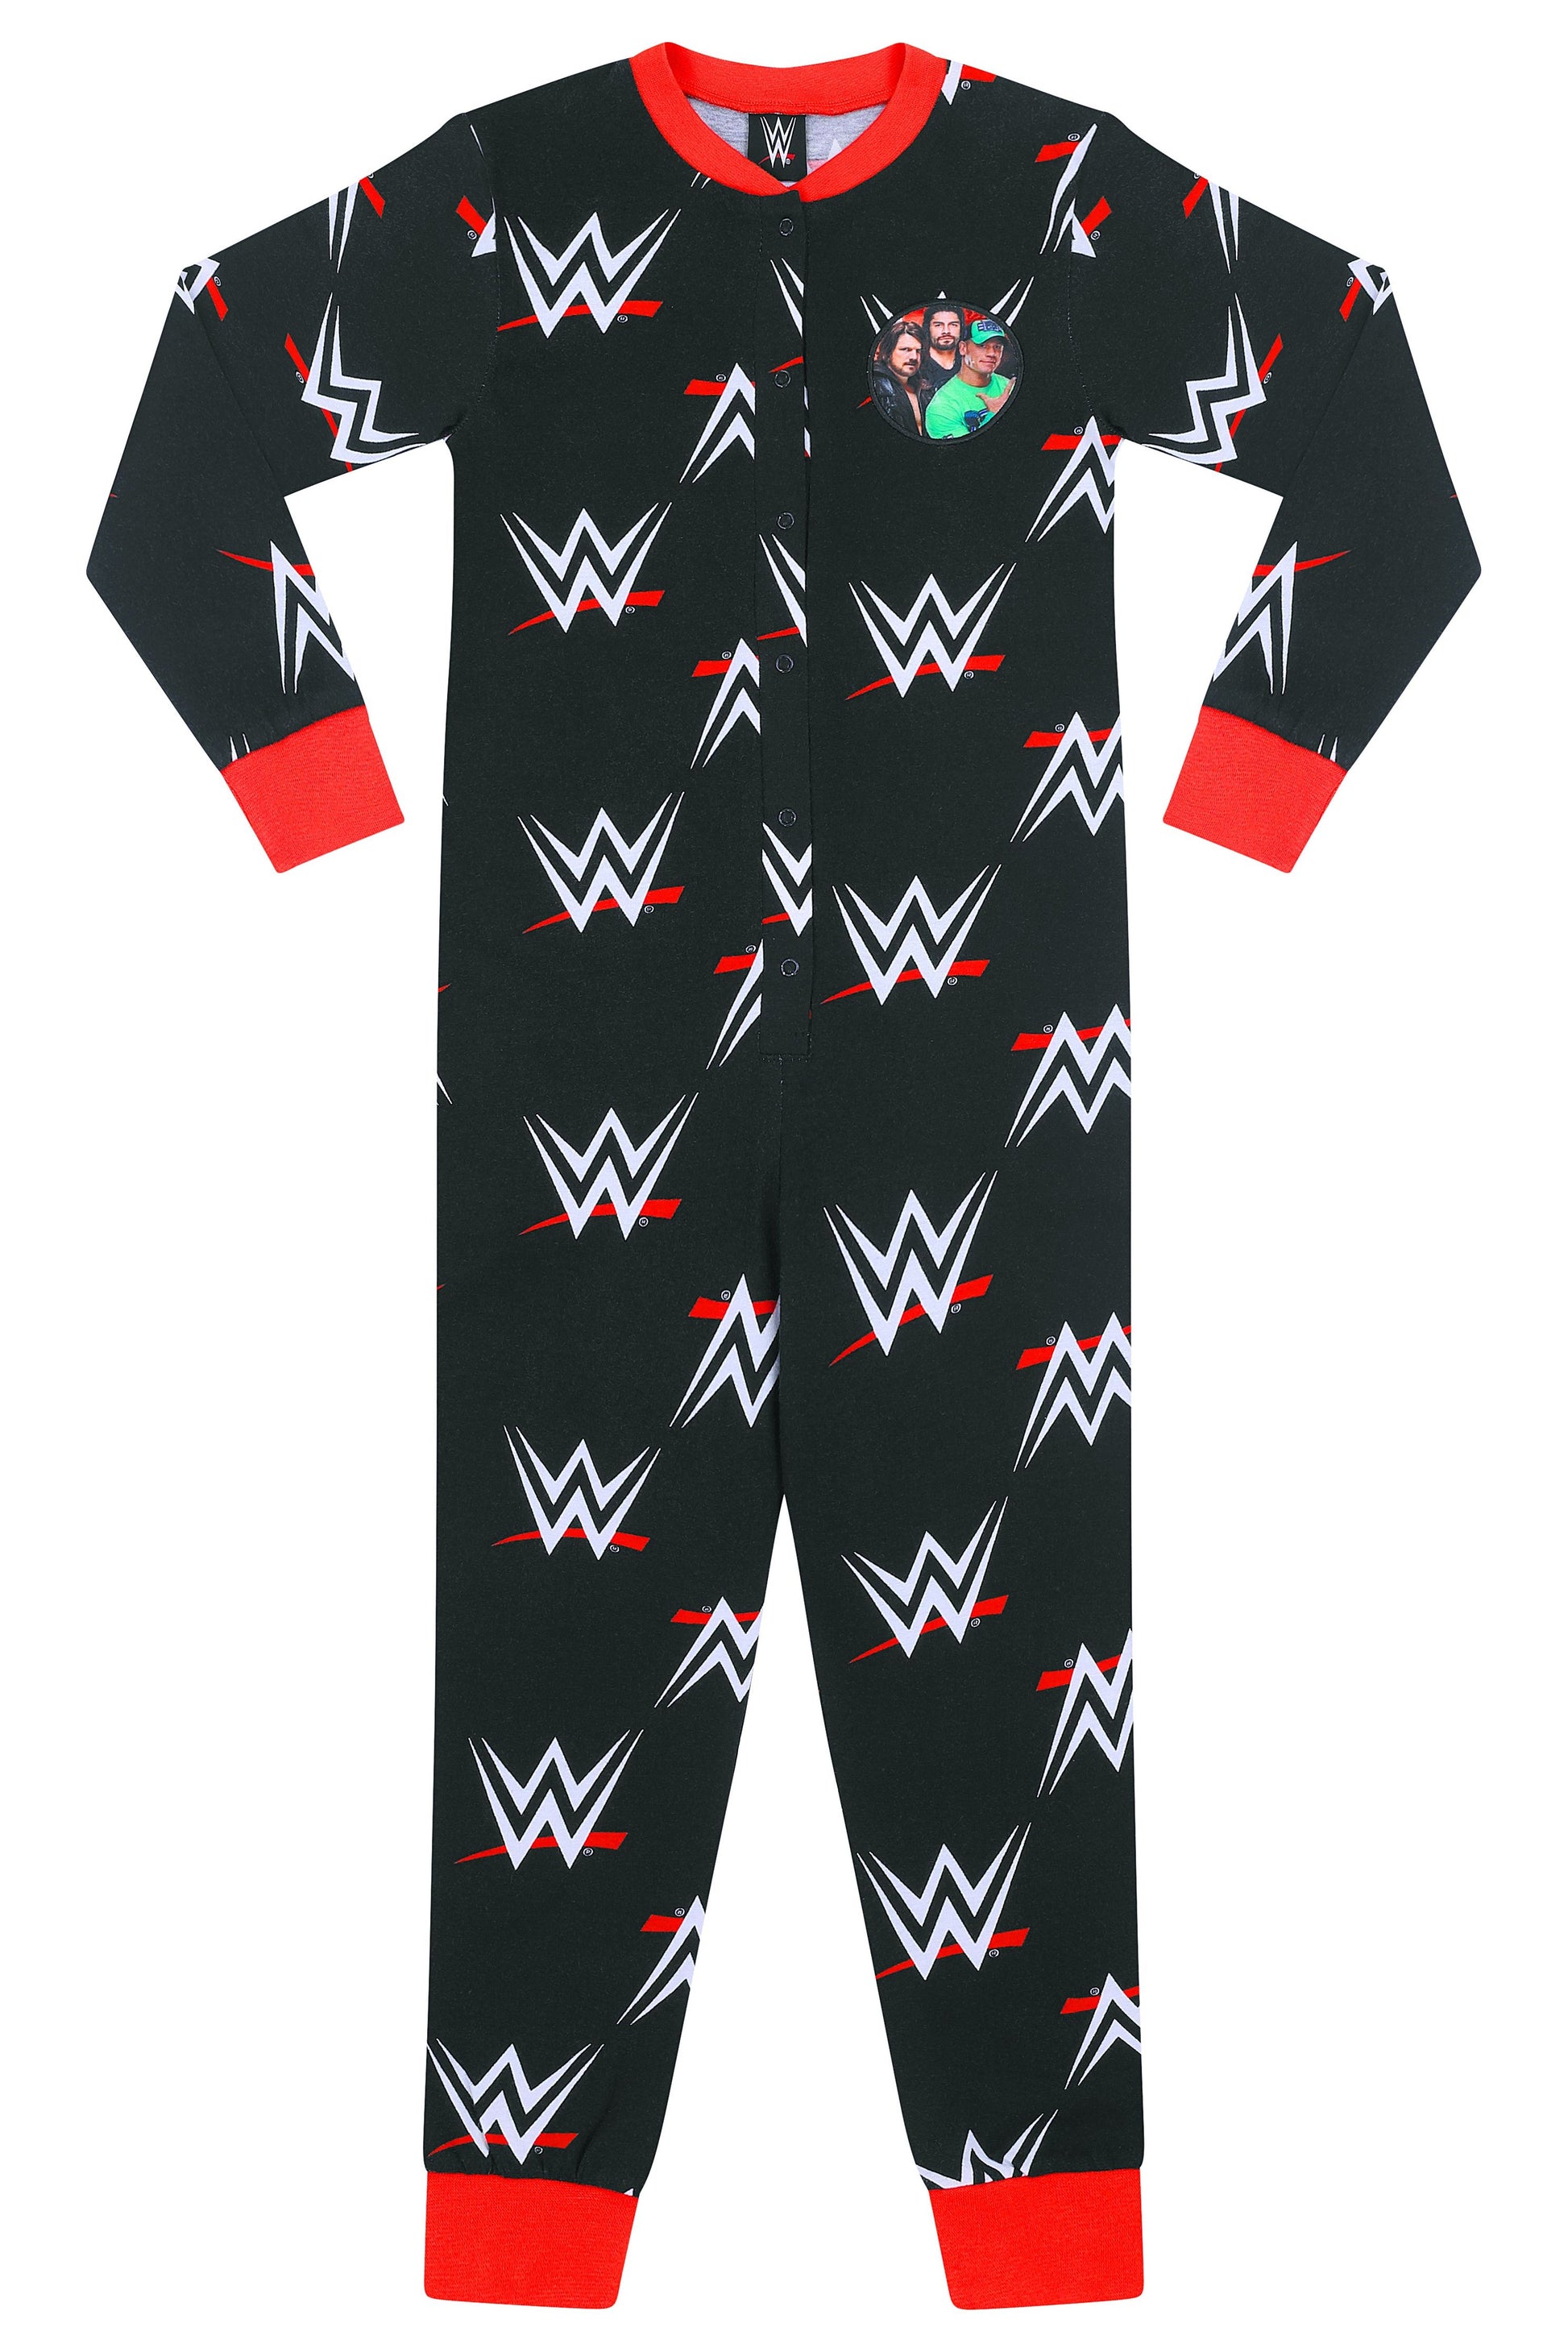 WWE onesie